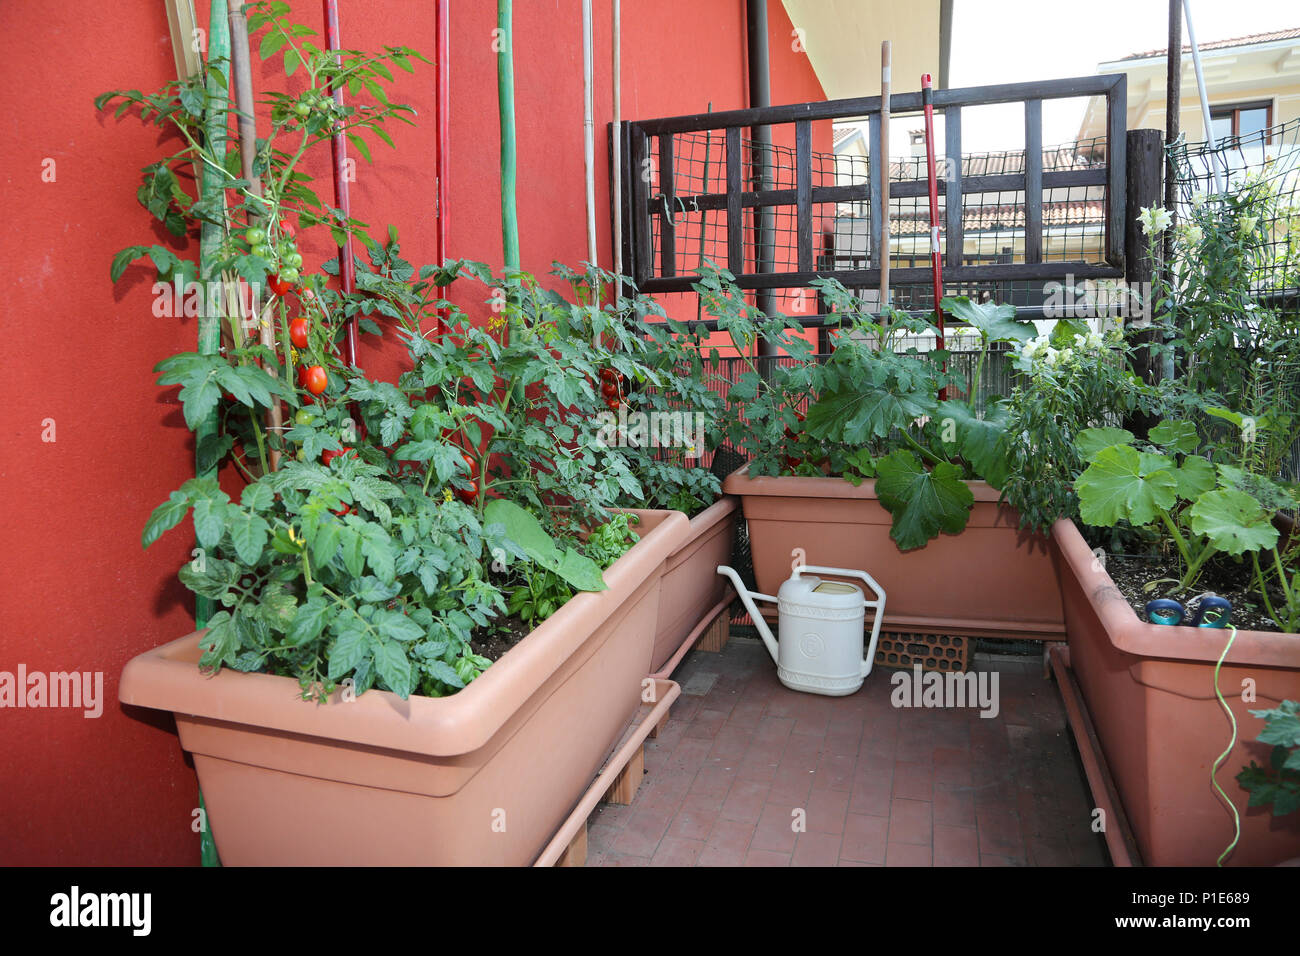 Agricoltura Sostenibile Come La Coltivazione Di Pomodori E Zucchine In Vasi Sulla Terrazza Dell Appartamento E Un Giallo Annaffiatoio Foto Stock Alamy